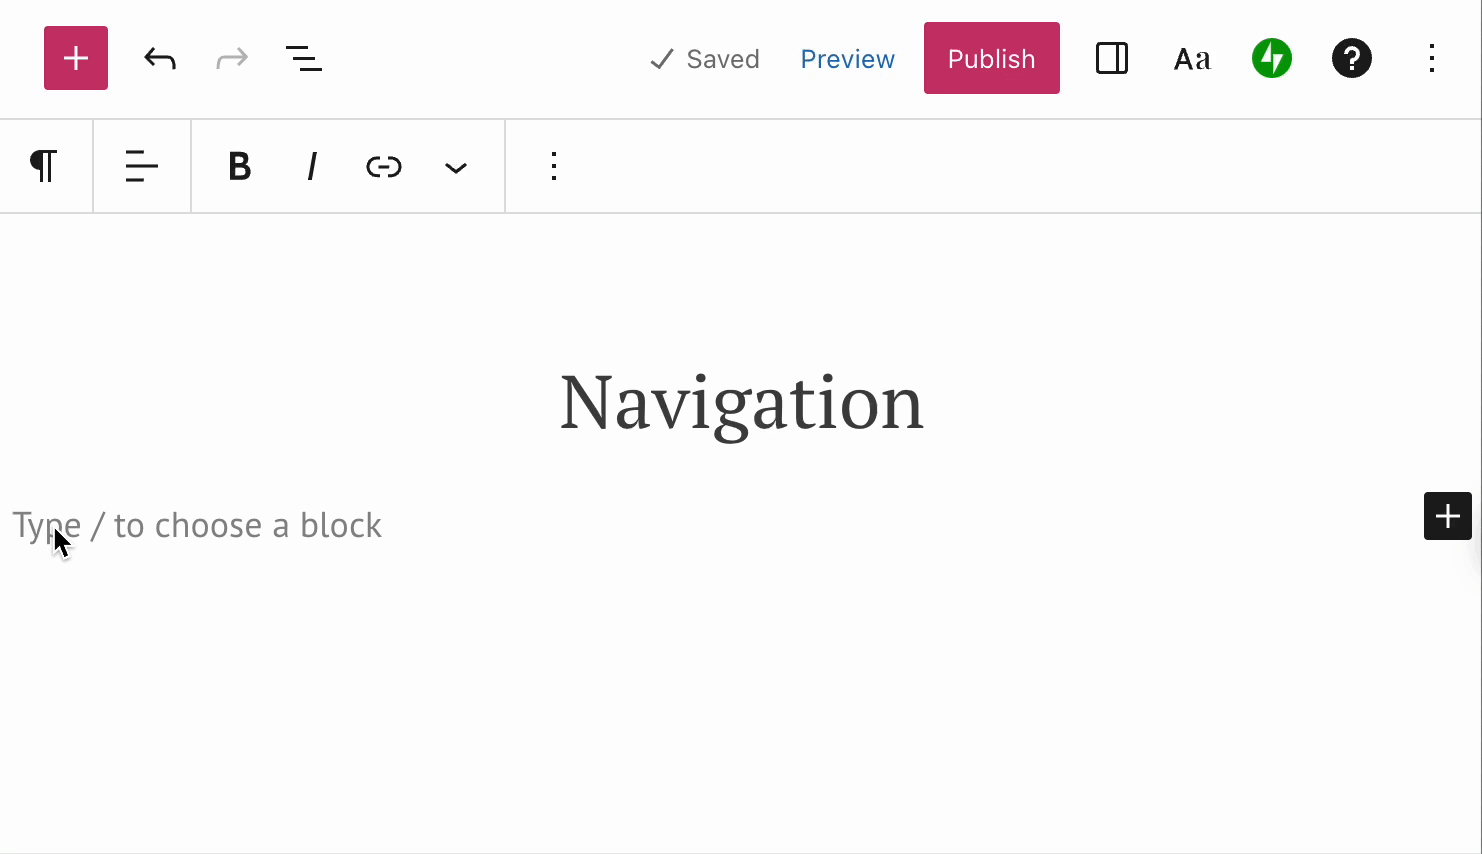 편집기의 빈 공간에 / 와 "navigation" 텍스트를 입력하면 일치하는 블록 유형을 가져와서 추가합니다. 